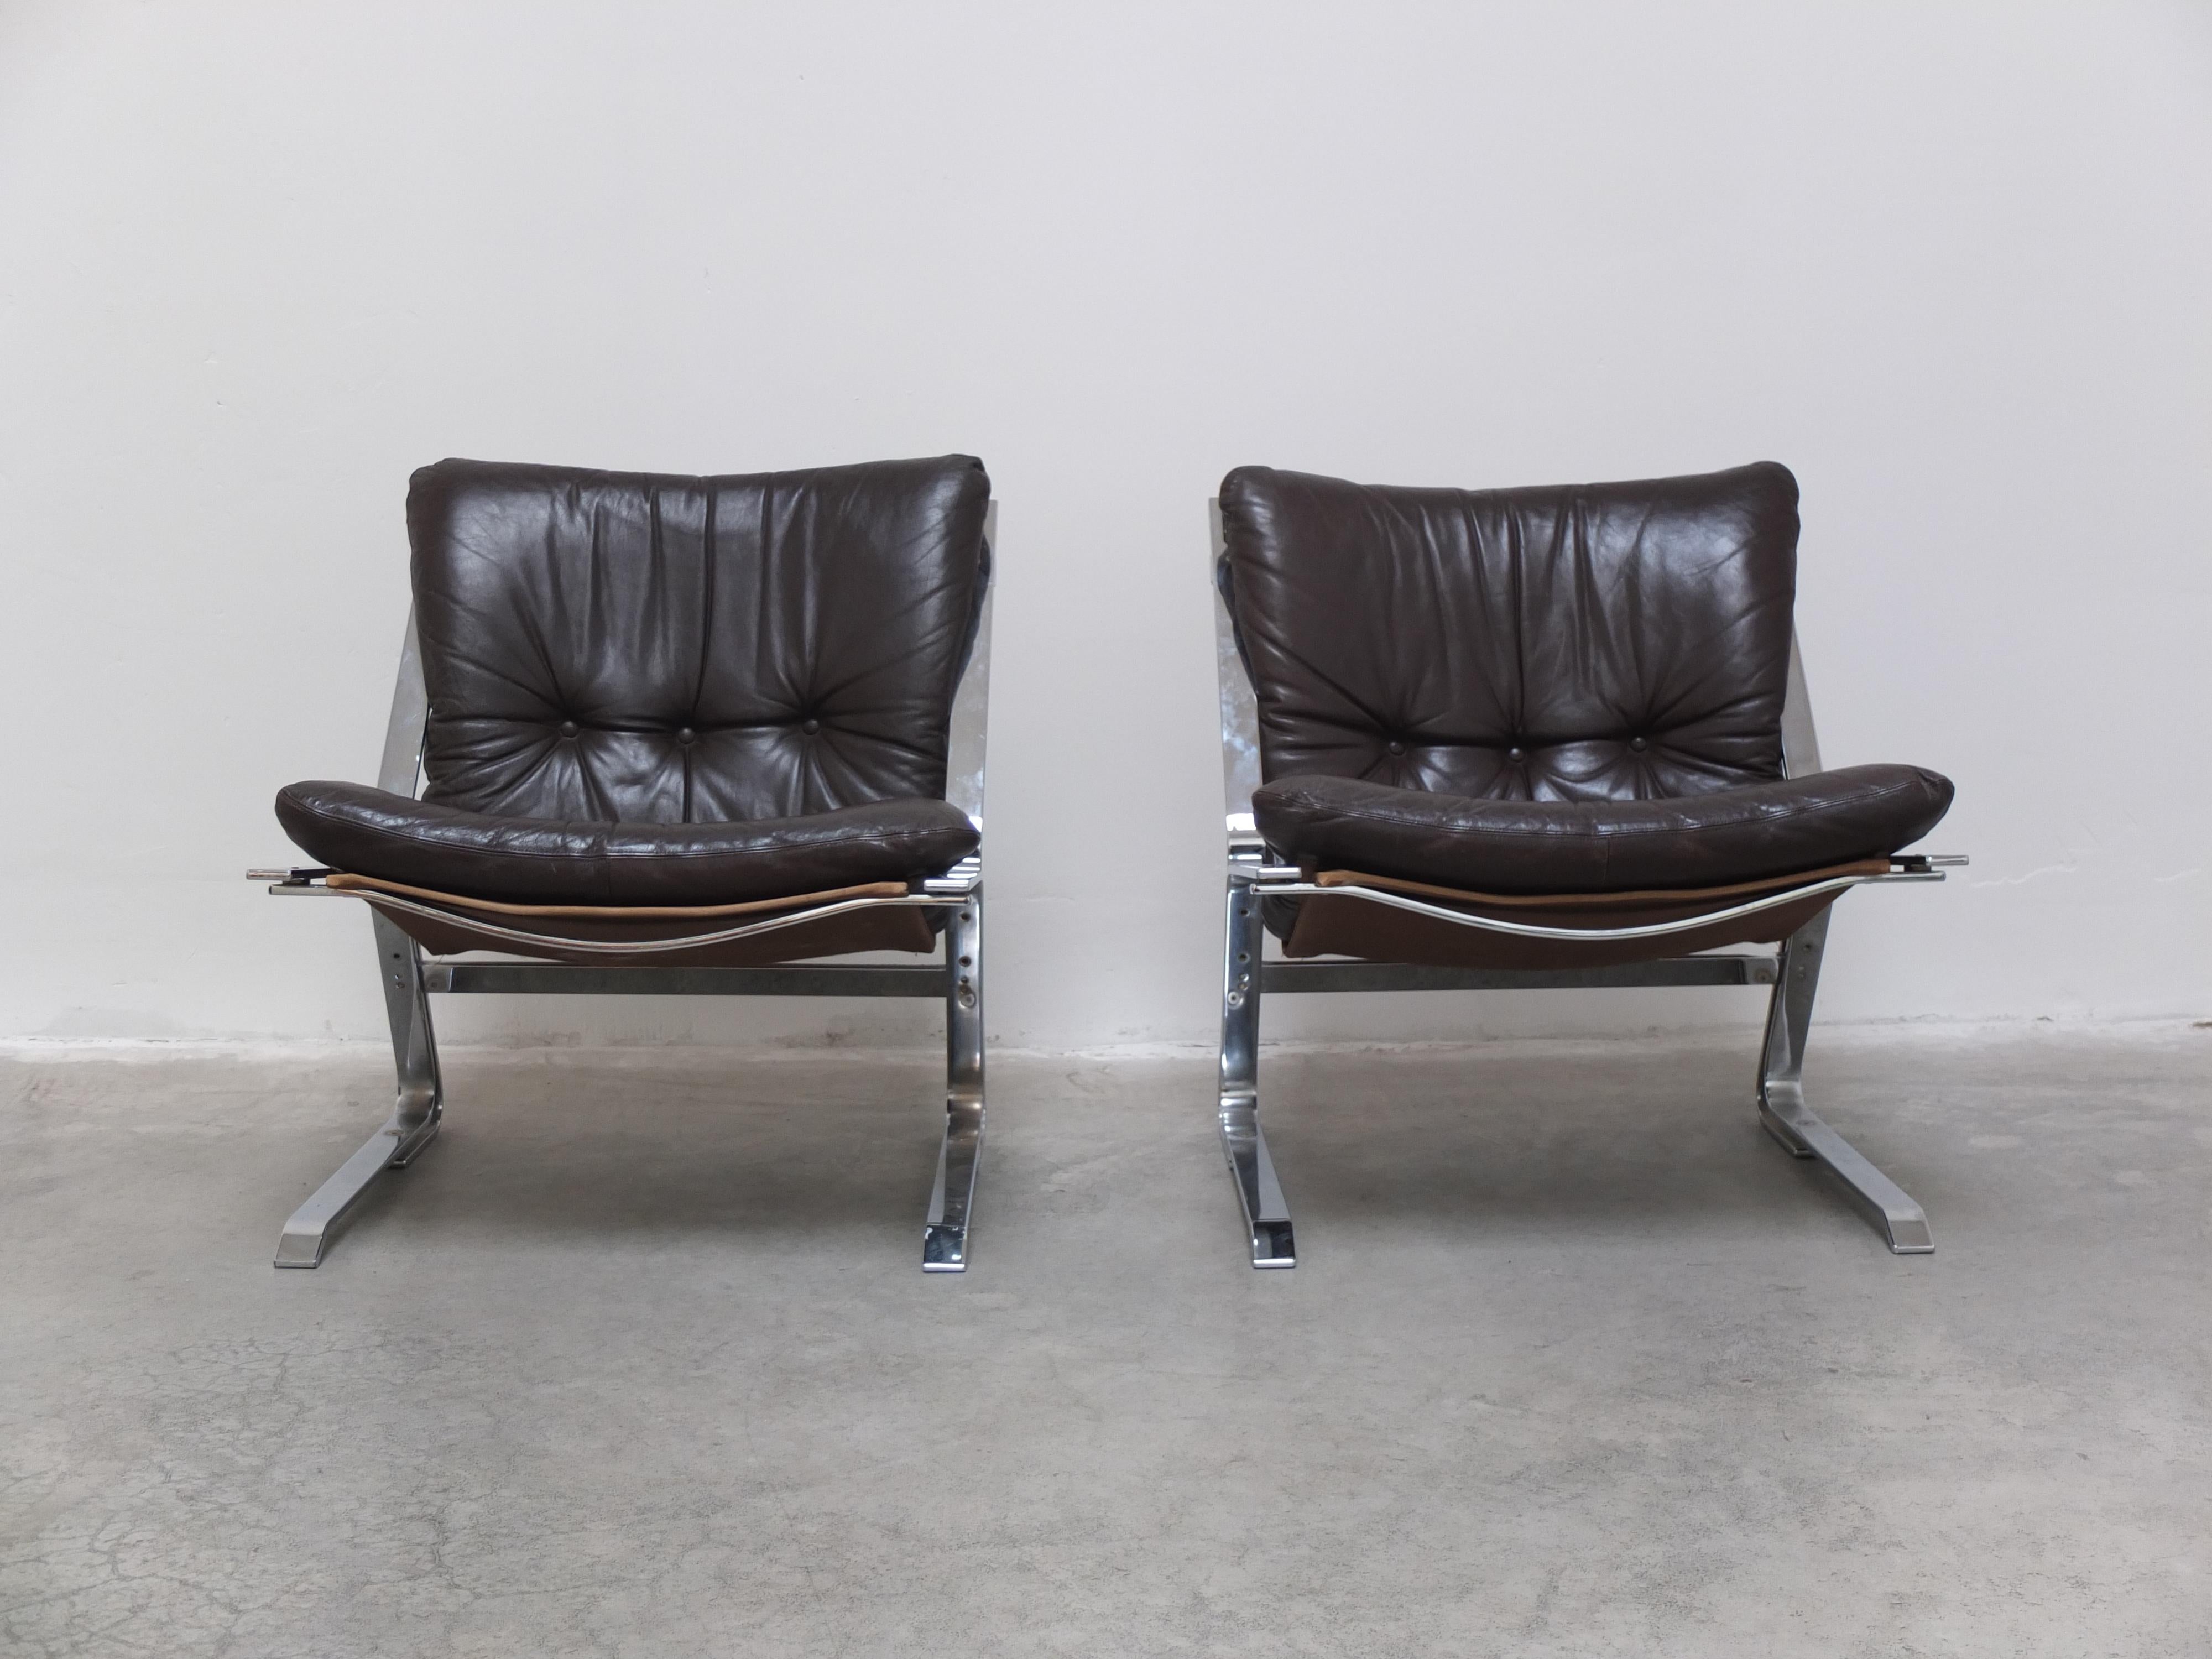 Prächtiges Sesselpaar, entworfen von Elsa & Nordahl Solheim für Rybo Rykken und Co. in Norwegen in den 1960er Jahren. Ein sehr interessantes Design mit Gestellen aus verchromtem Flachstahl in Kombination mit den originellen und sehr weichen